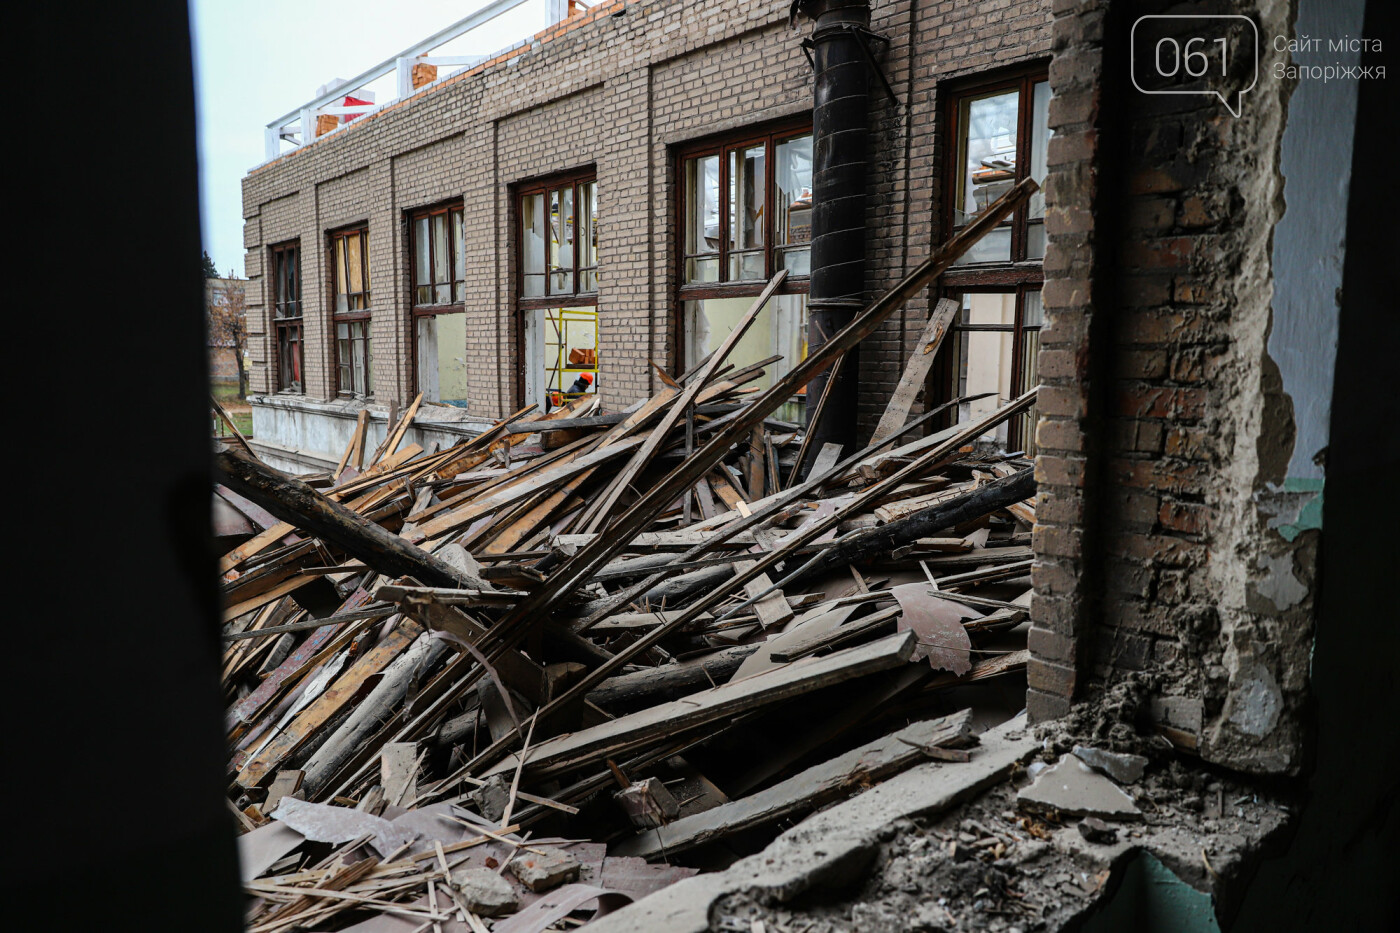 В Запорожье восстанавливают школу, которая пострадала во время масштабного пожара 5 лет назад, - ФОТОРЕПОРТАЖ , фото-27